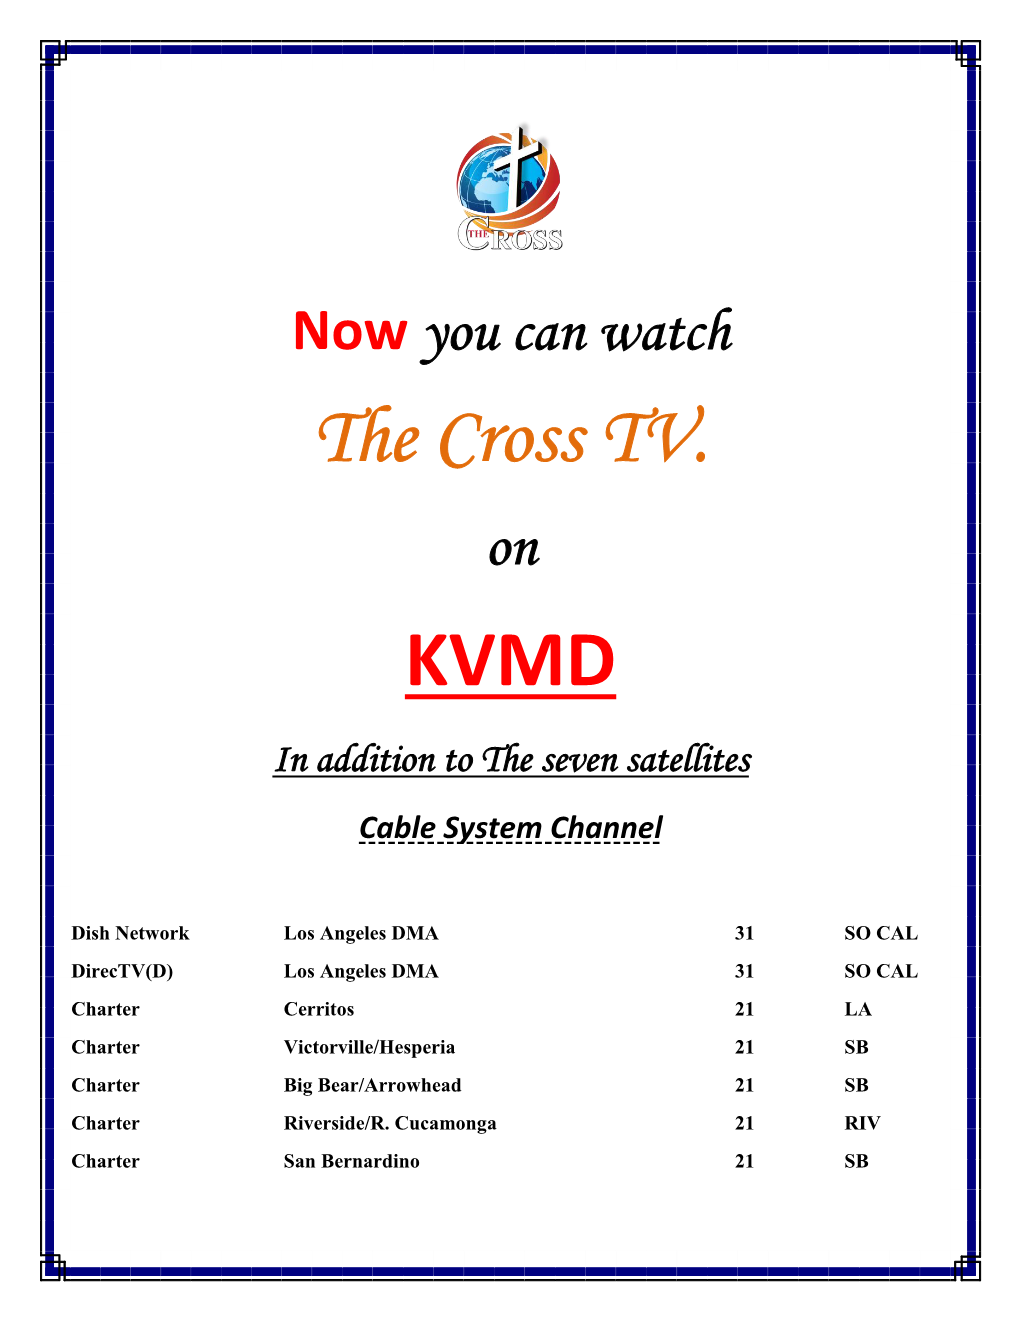 The Cross TV. KVMD